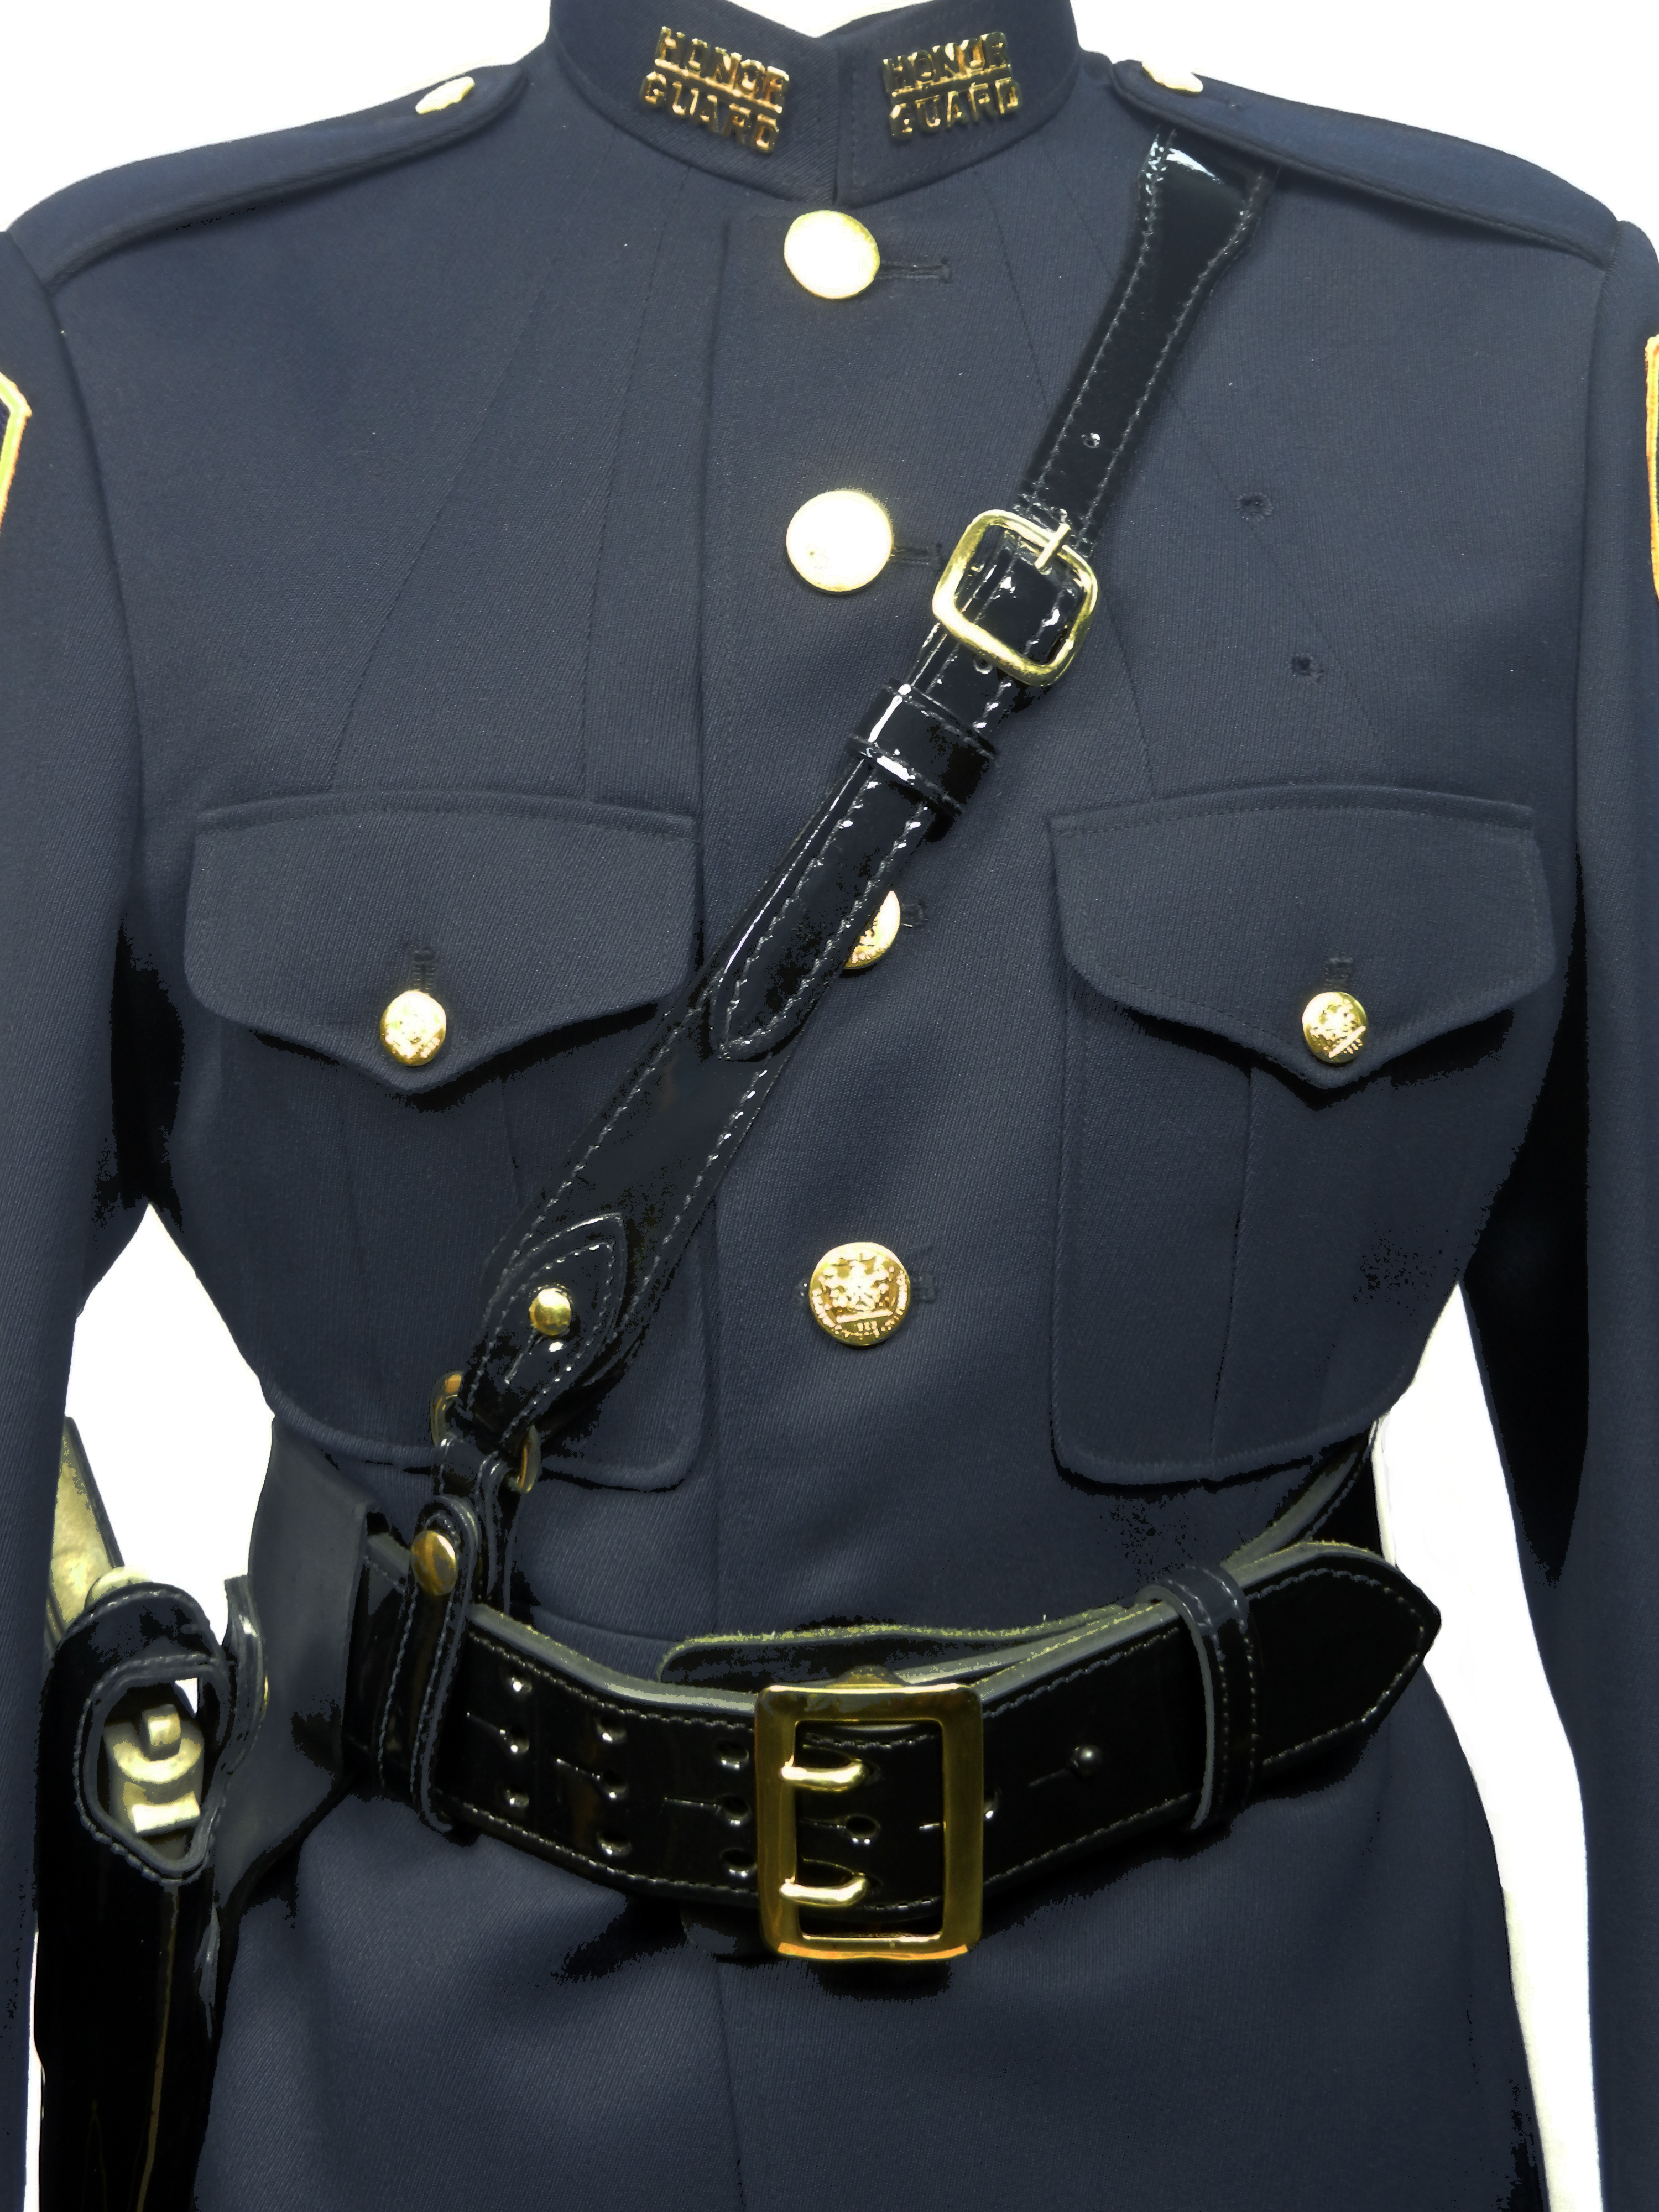 Honor Guard Uniform Accessories 92